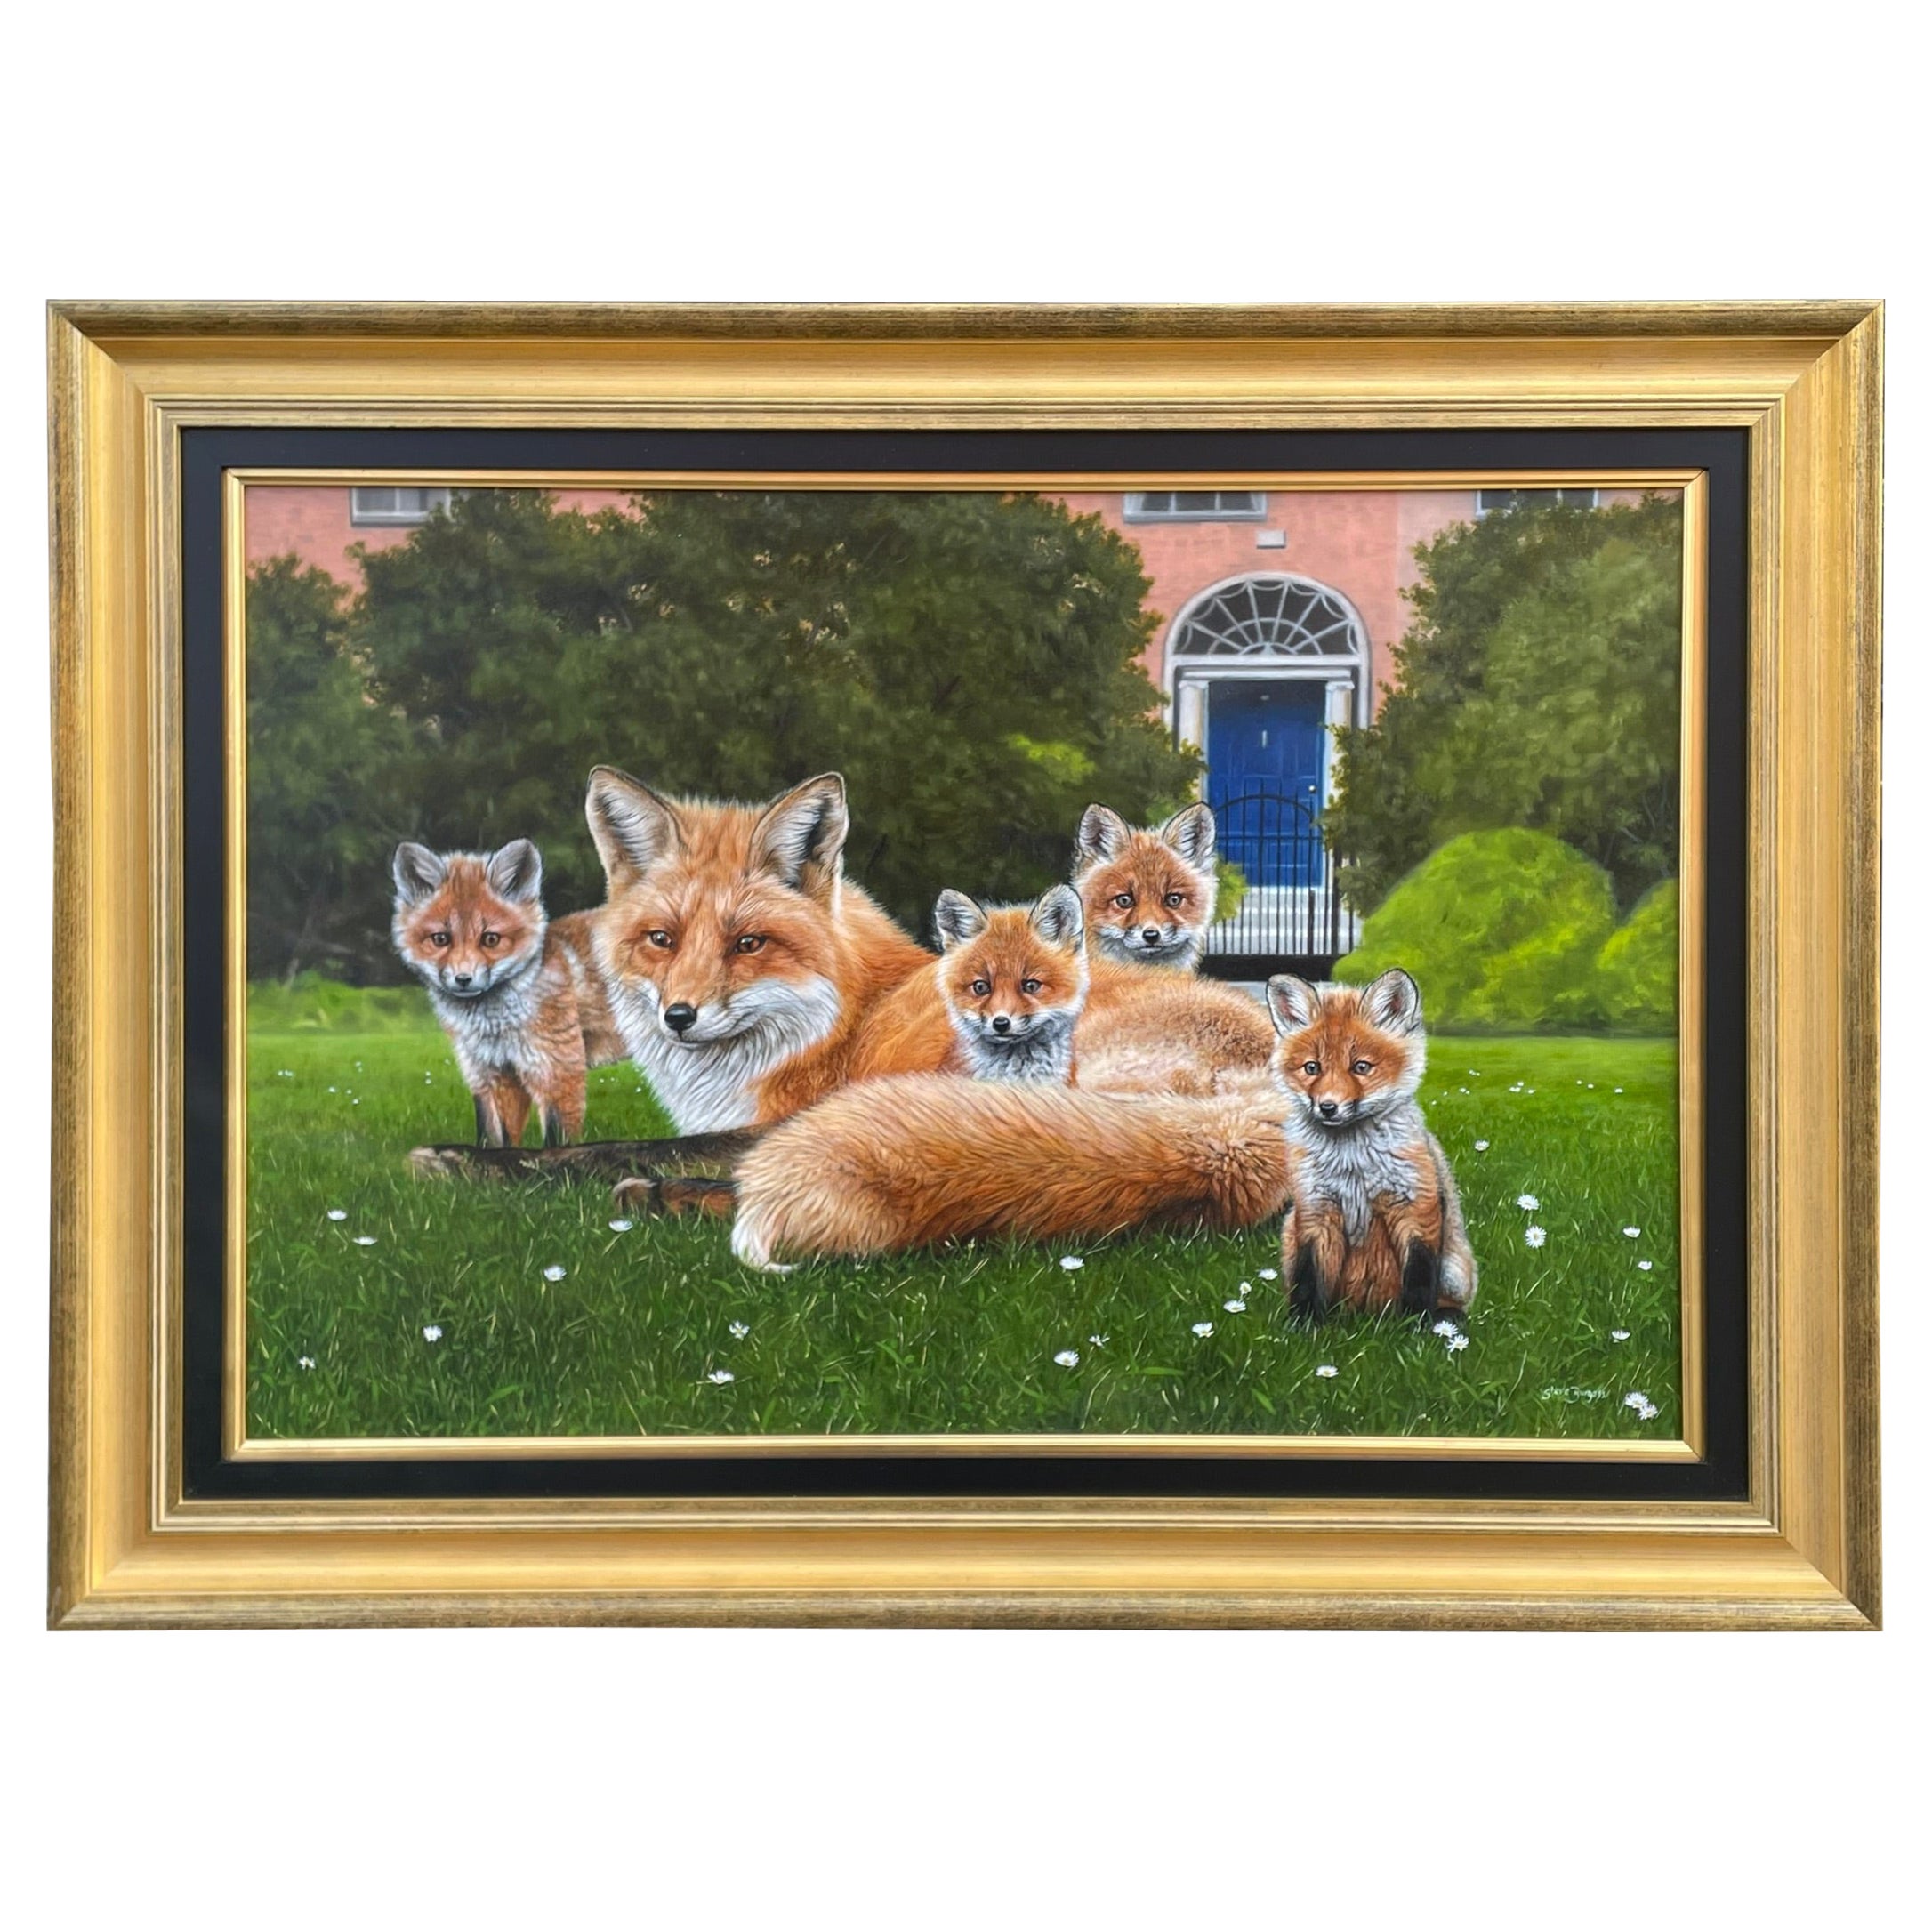 Steve Burgess - Irish Painting Fitzwilliam Square Dublin Ireland Foxes en vente